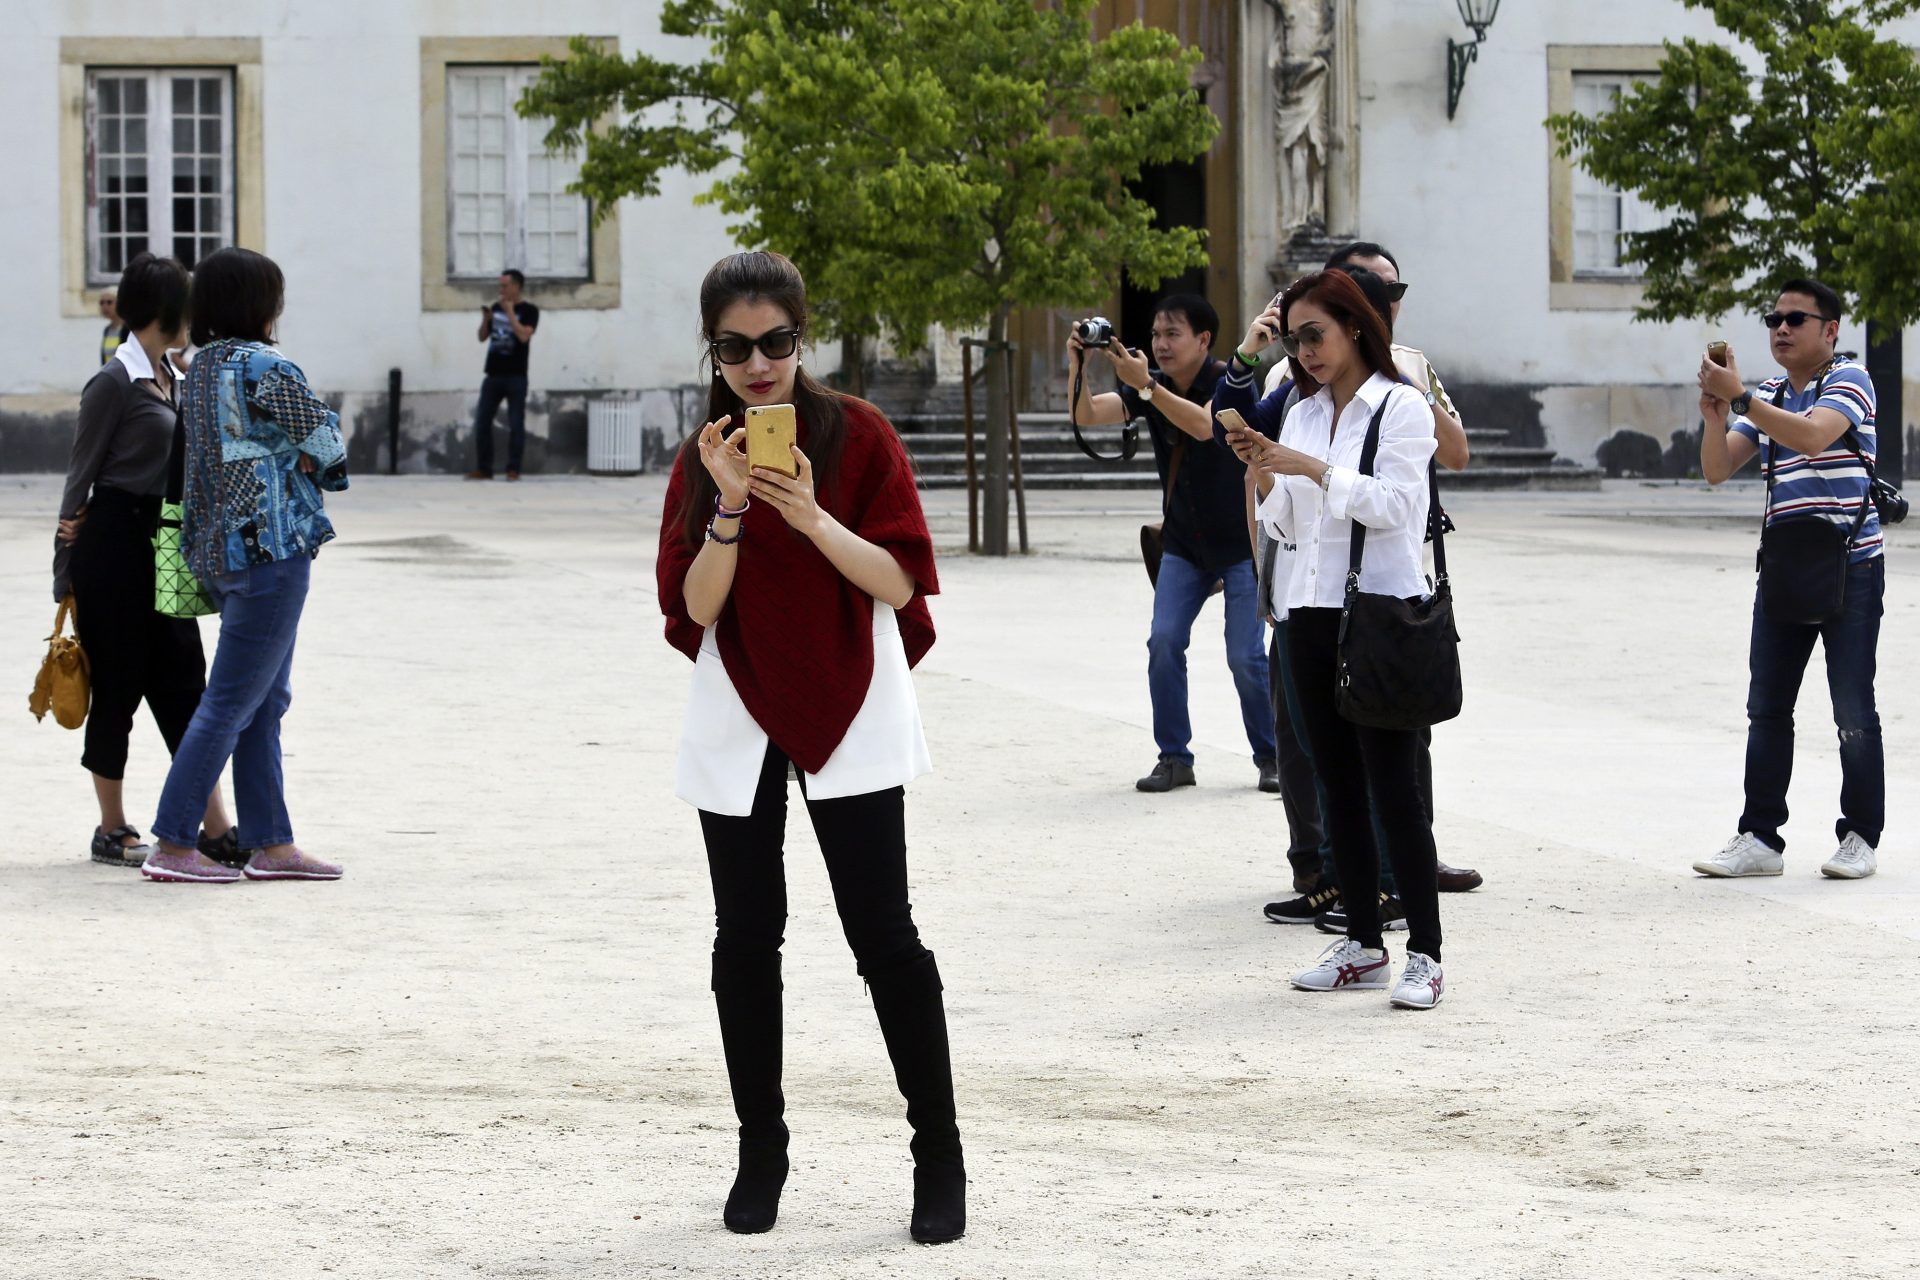 Turistas asiáticos visitam a Universidade de Coimbra, 21 de junho de 2015. Desde a classificação como Património Mundial, que os turistas na Universidade de Coimbra têm vindo a crescer, entre eles os asiáticos, que já suplantaram o número de visitantes portugueses, quando se retiram às contas as visitas escolares.   PAULO NOVAIS/LUSA